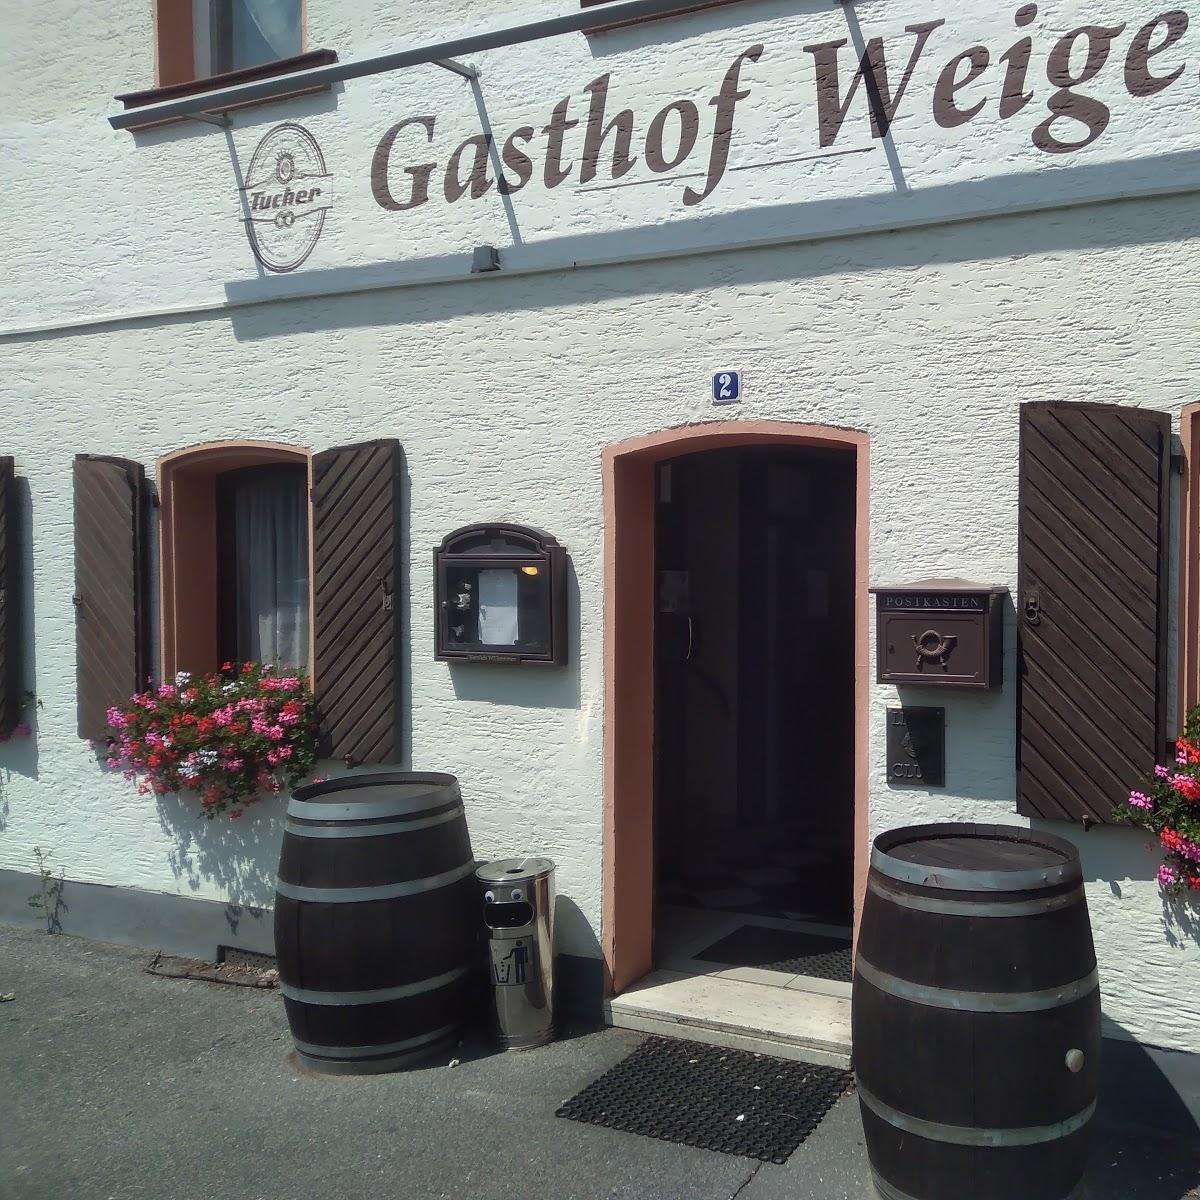 Restaurant "Gasthof Weigel" in Fürth